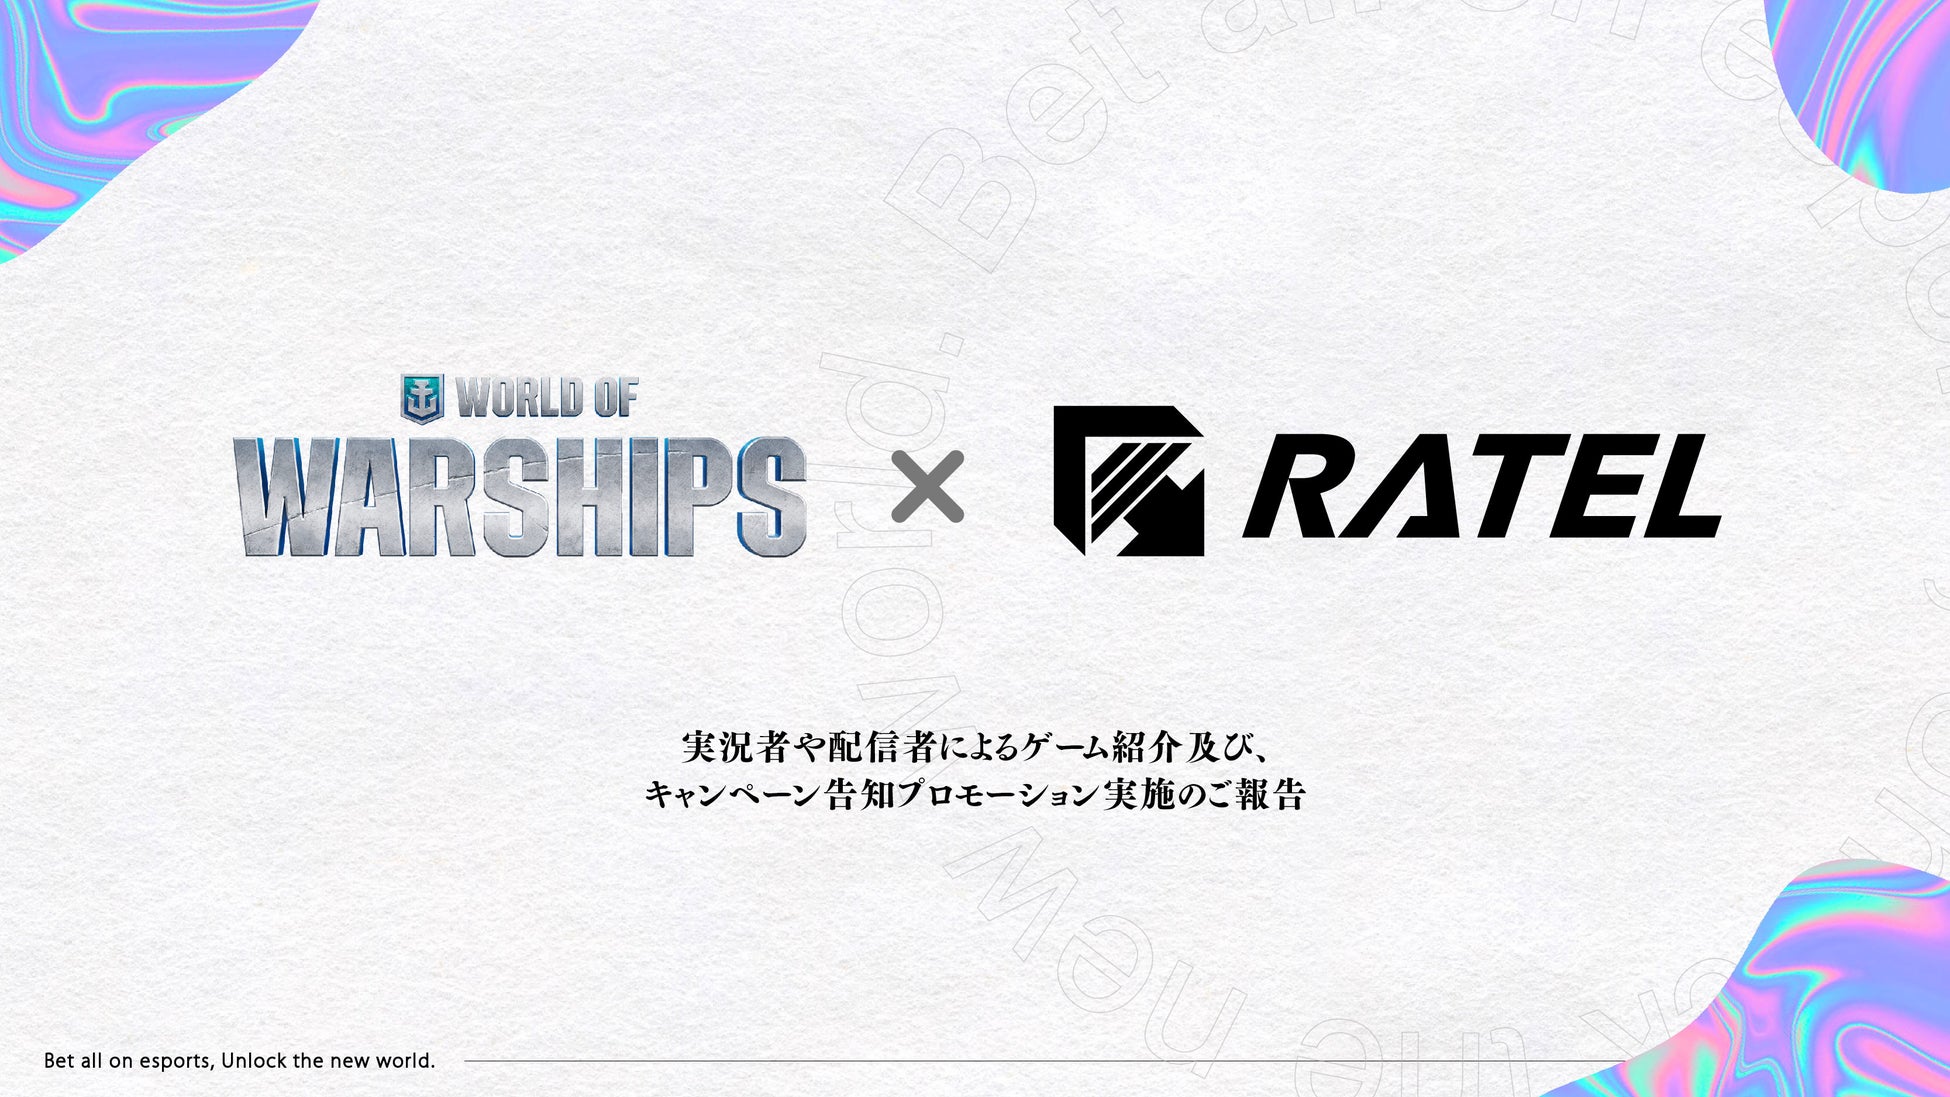 オンライン海戦ストラテジーゲーム「World of Warships」の実況者や配信者によるゲーム紹介及び、キャンペーン告知プロモーションを株式会社RATELにて実施